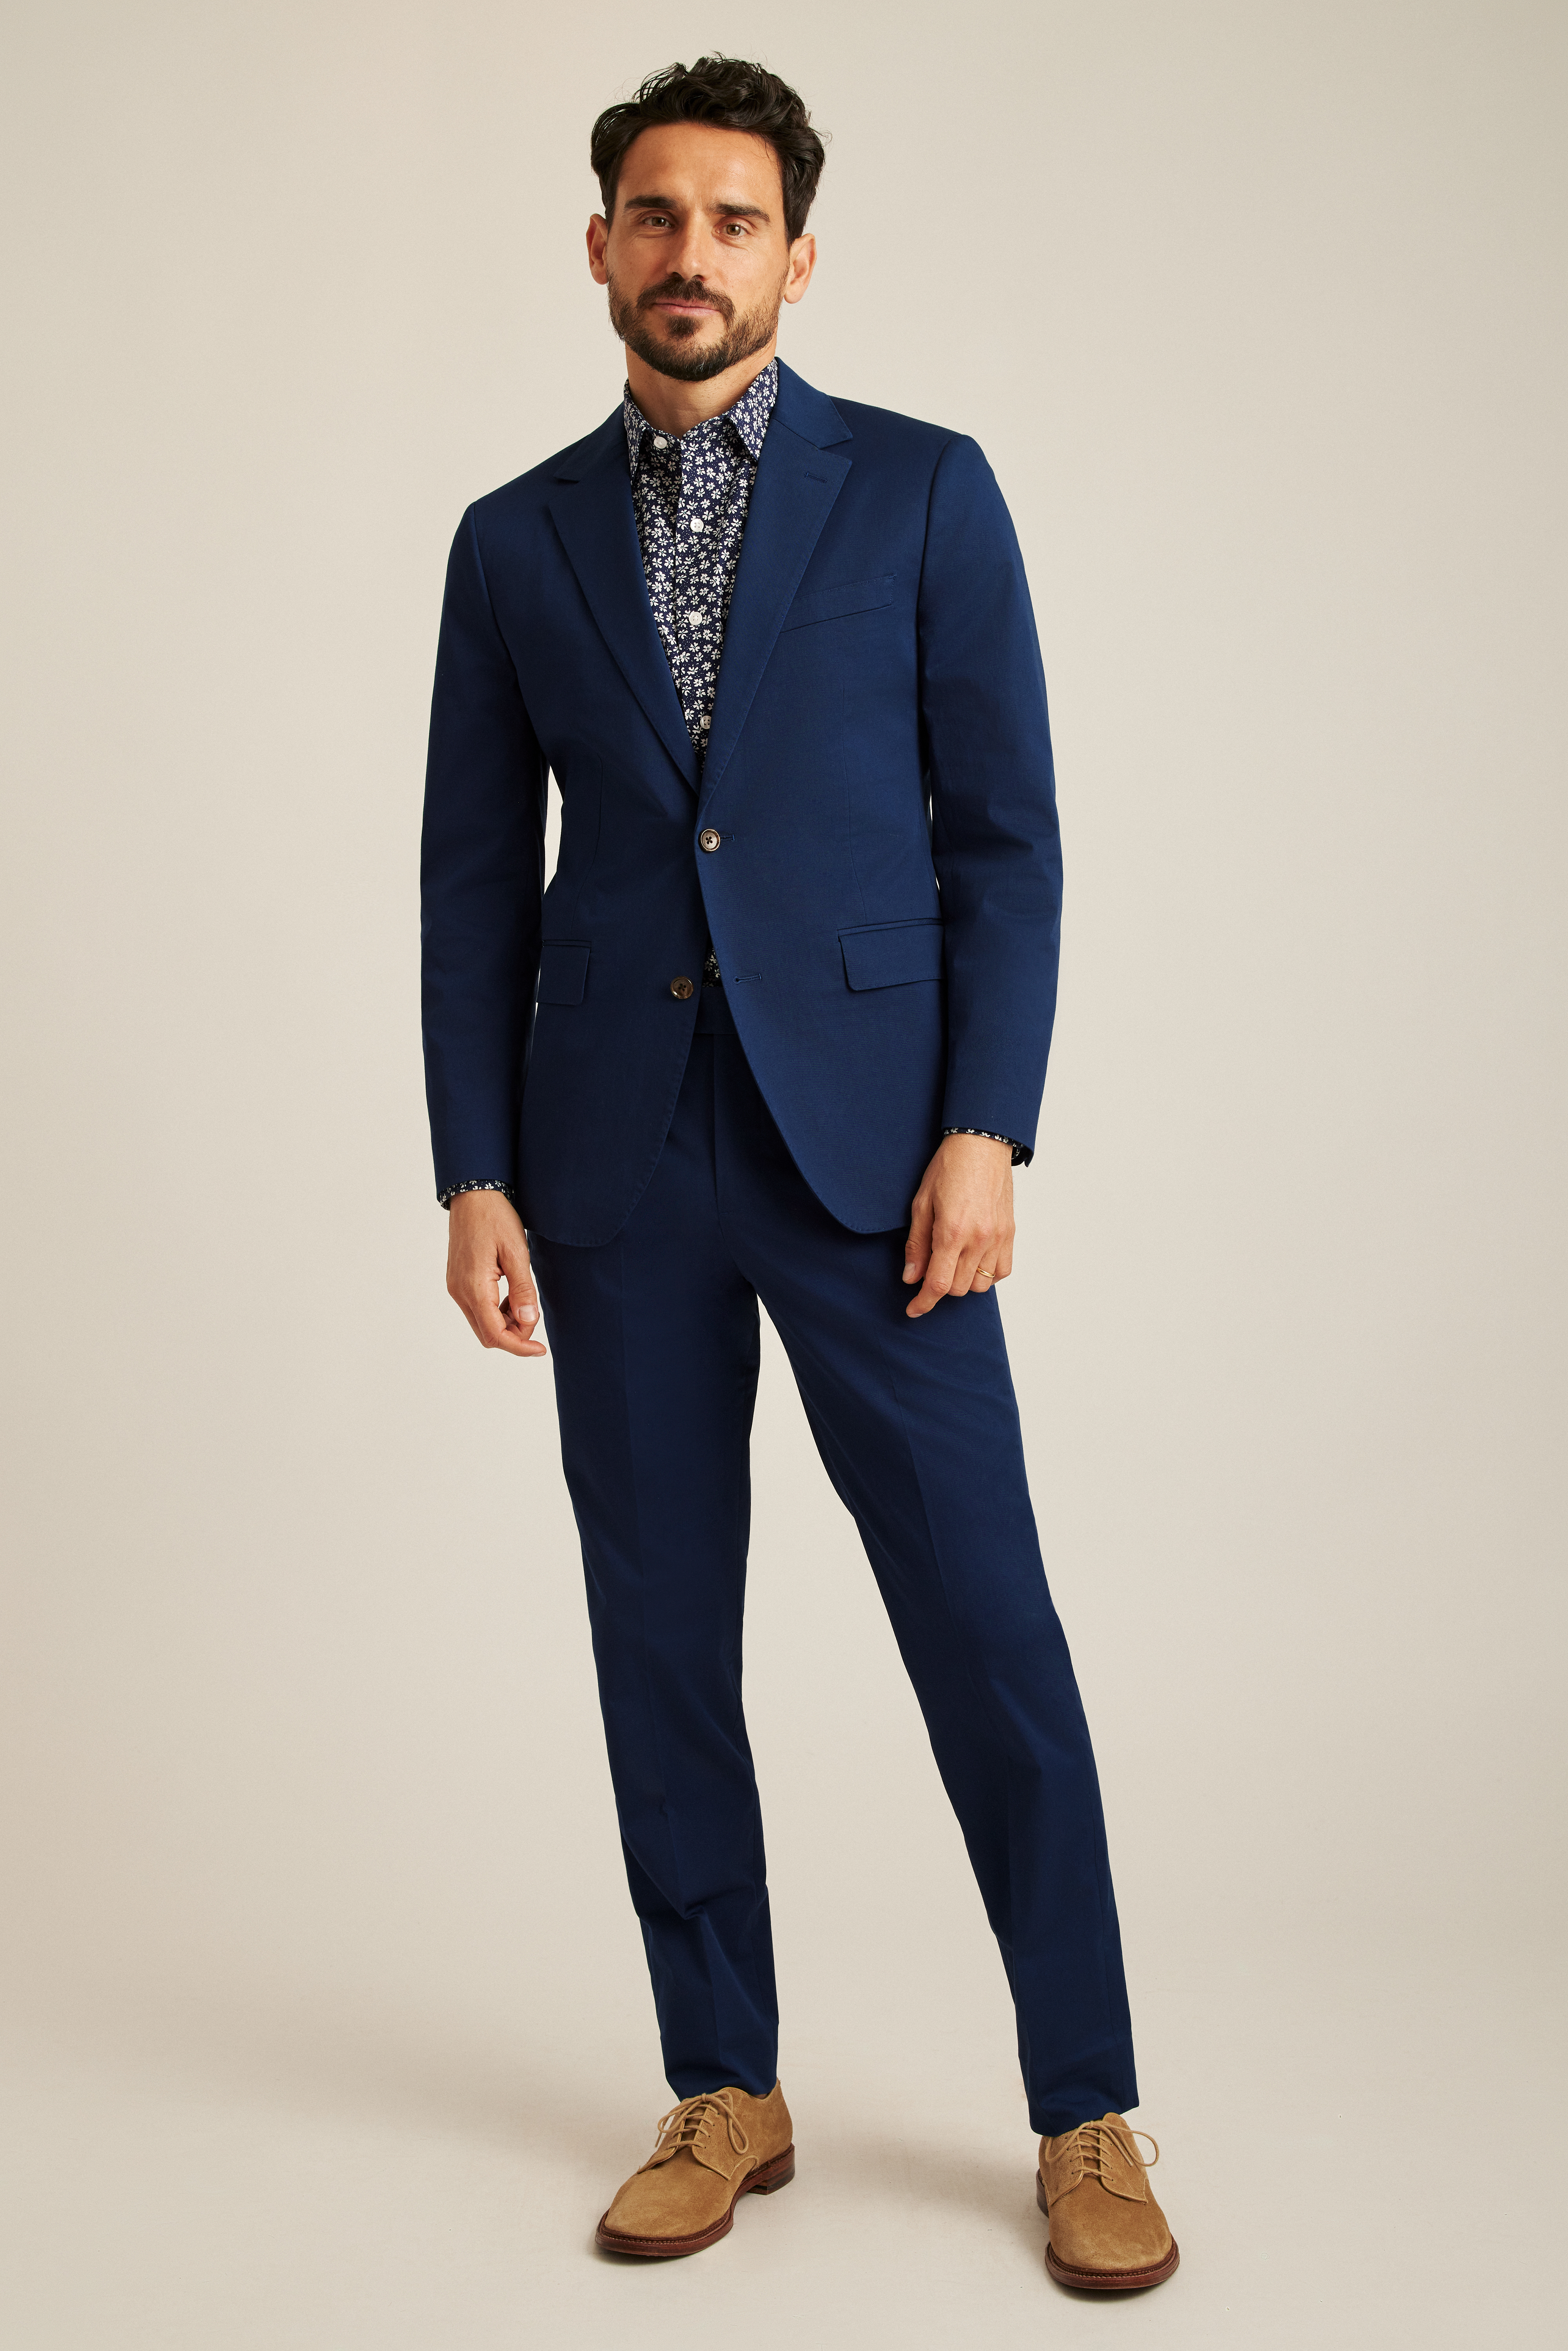 Burton Spring 2019 Men's Campaign | Burgundy suit, Designer suits for men, Maroon  suit